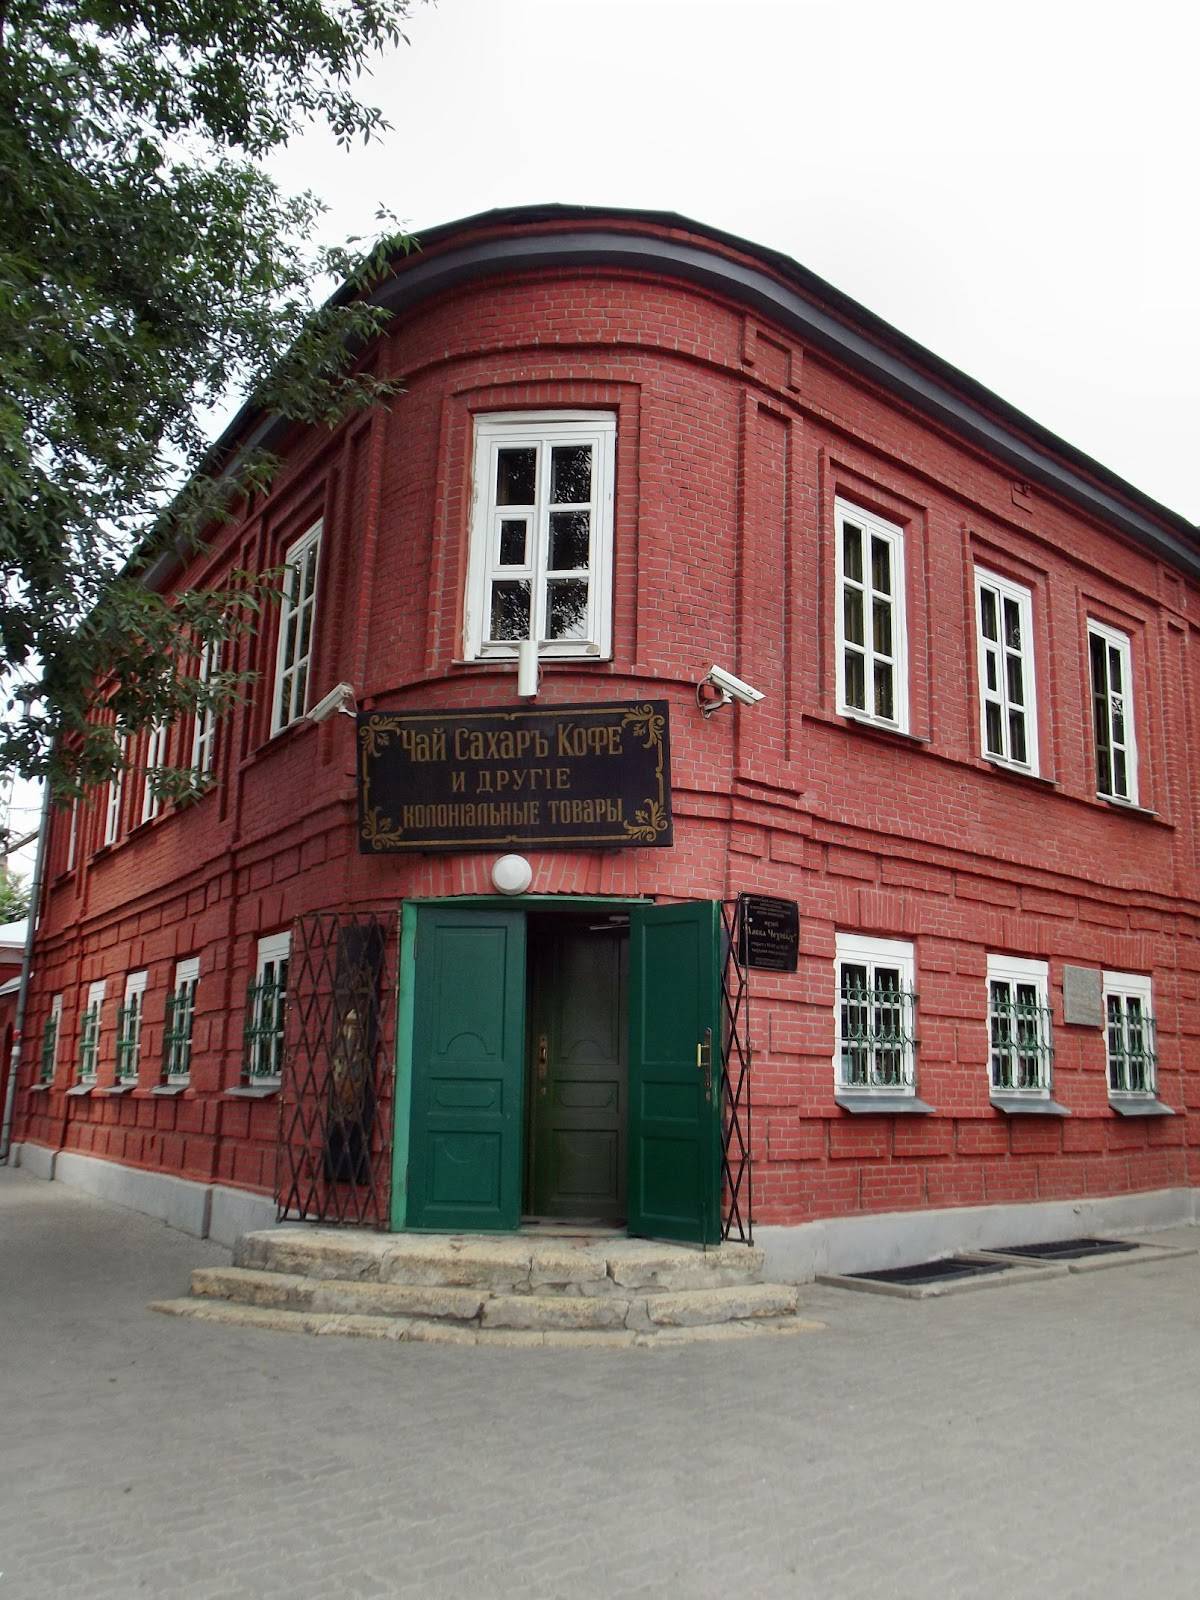 Чеховские места и музеи таганрога. наши впечатления